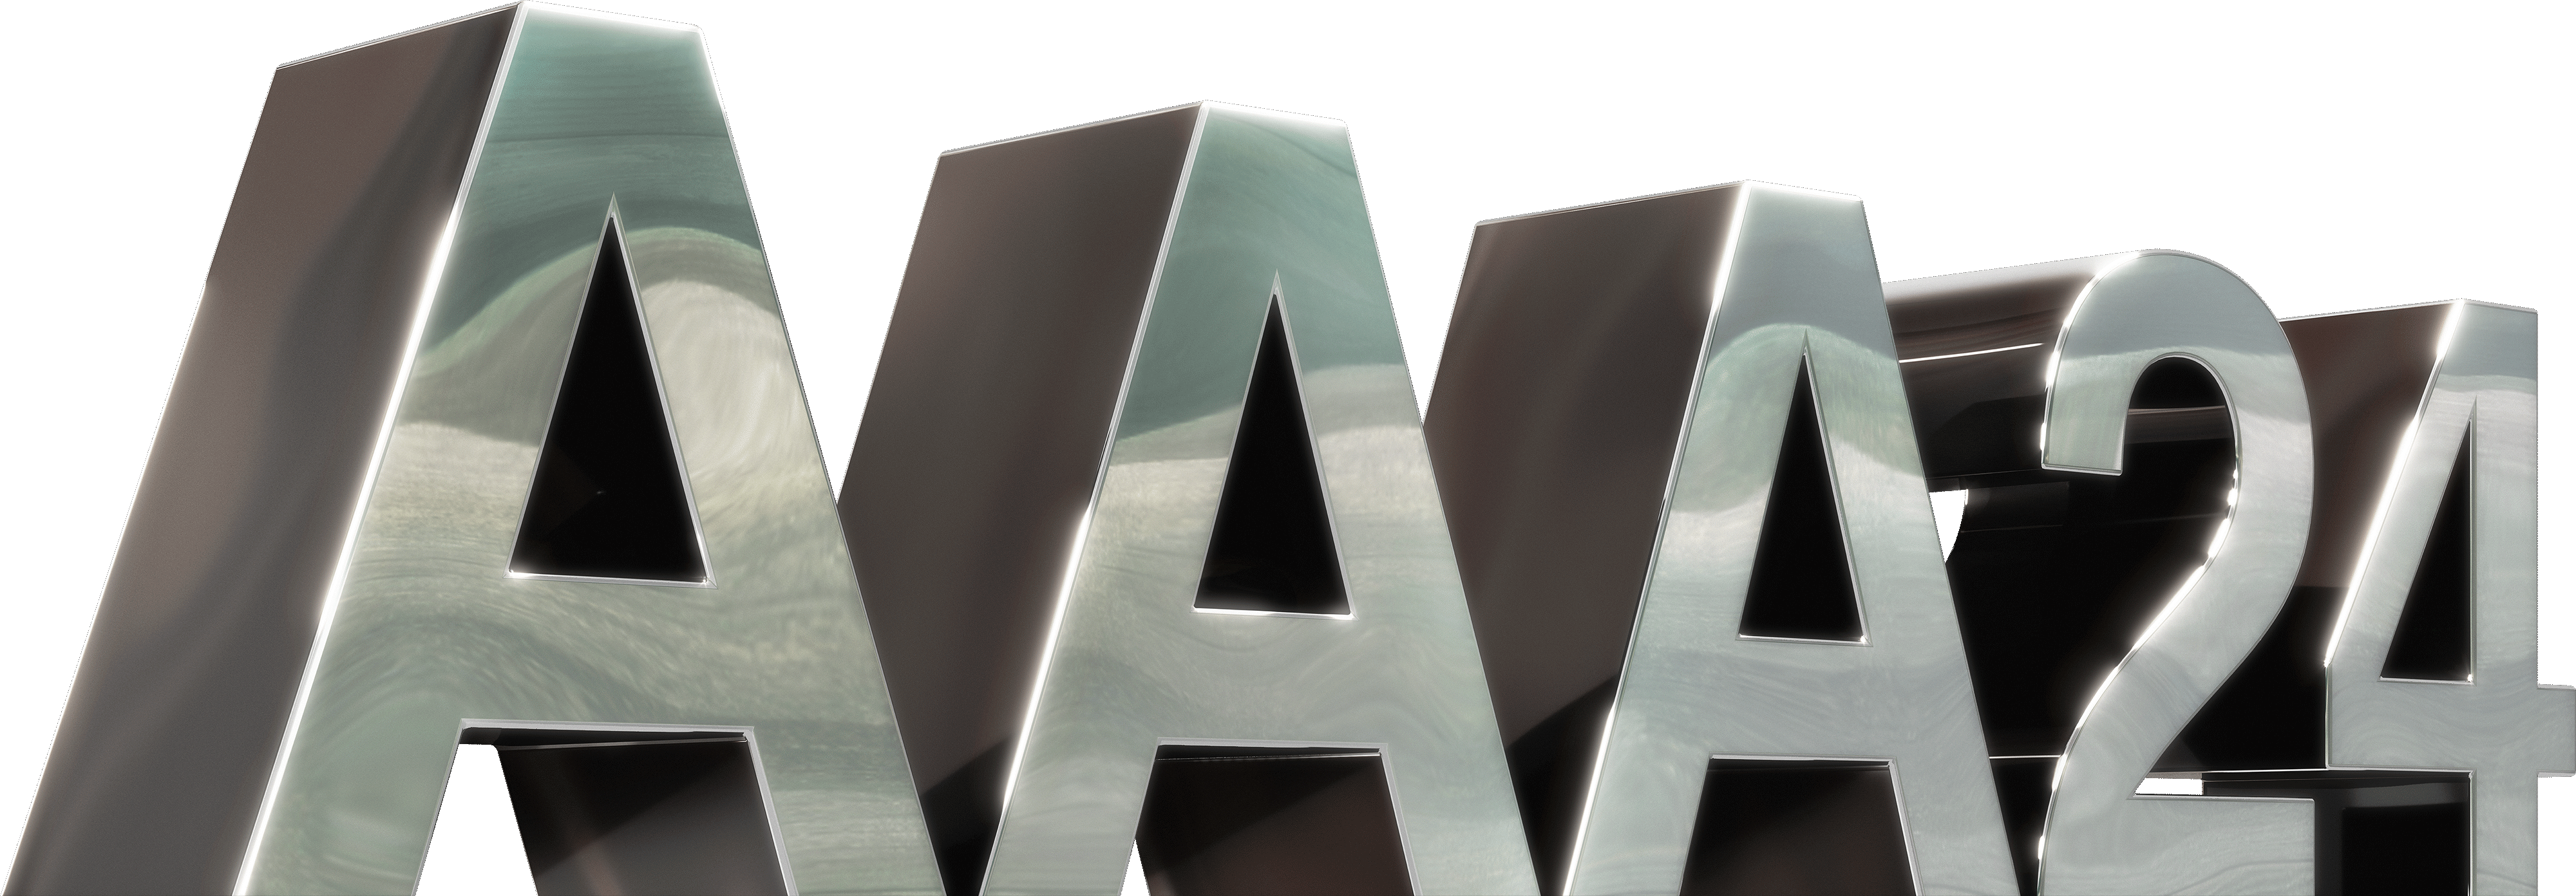 A24 All Access logo